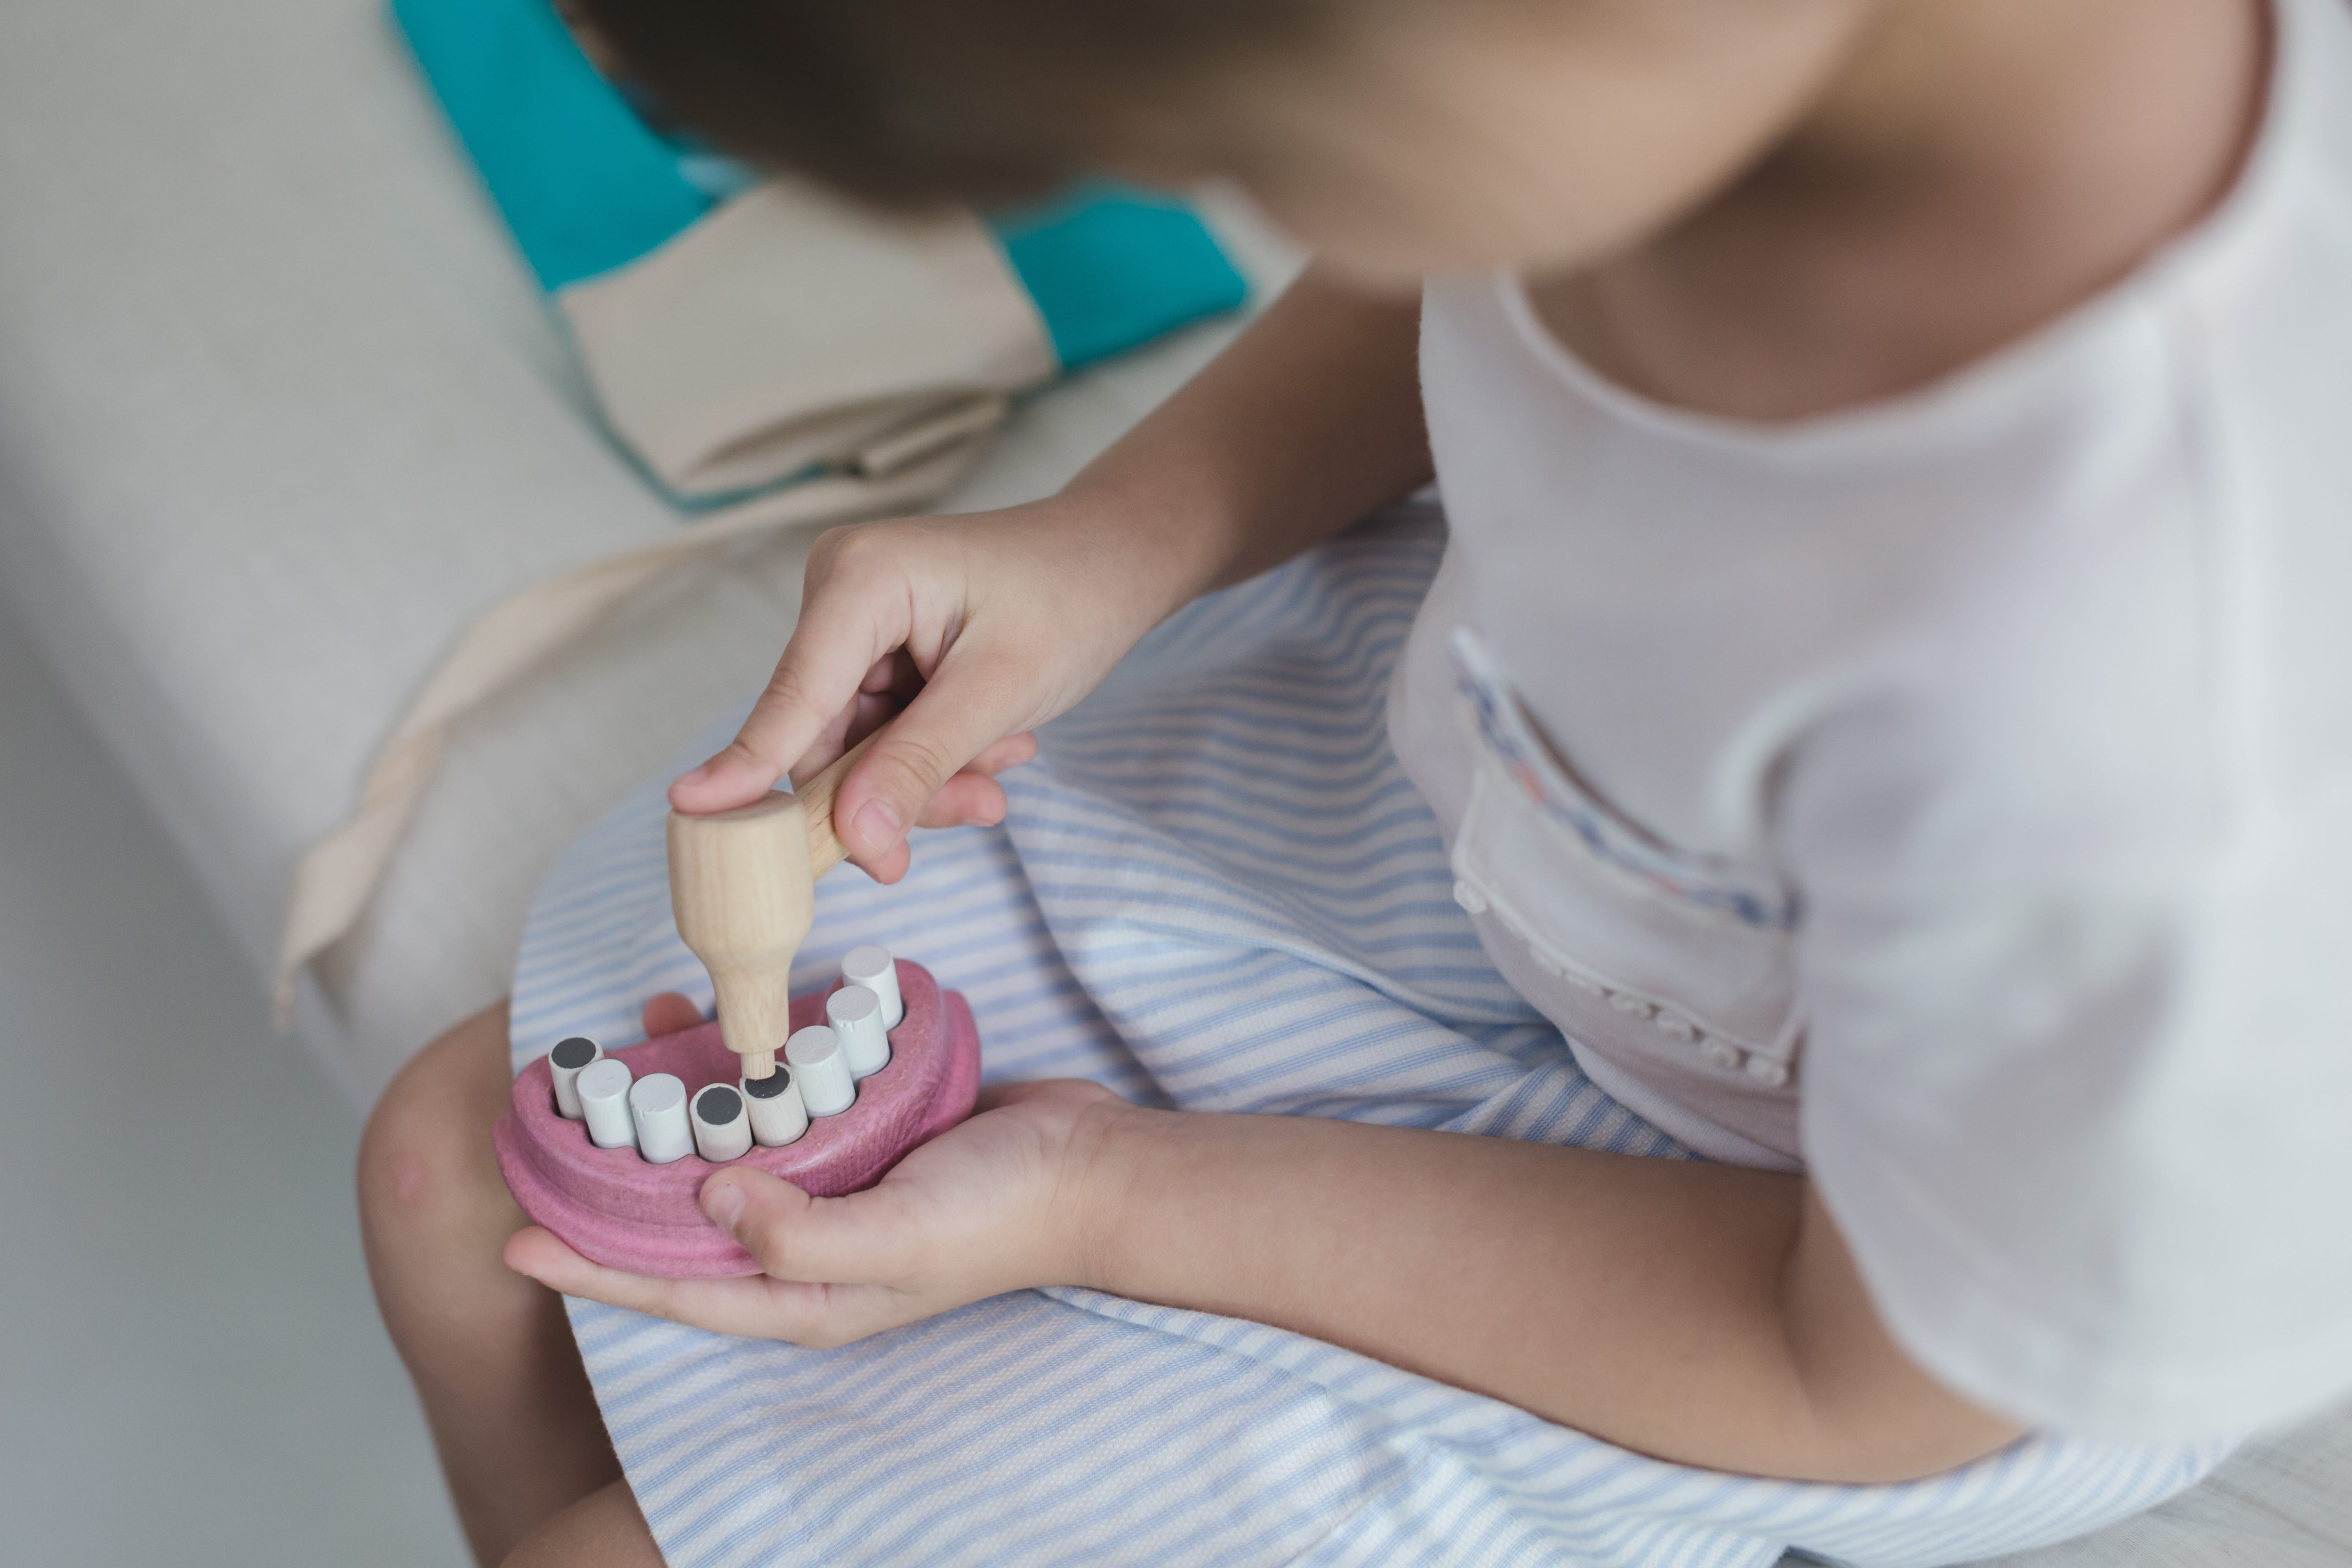 Zahnarzt-Set, mit Tasche, Plan Toys